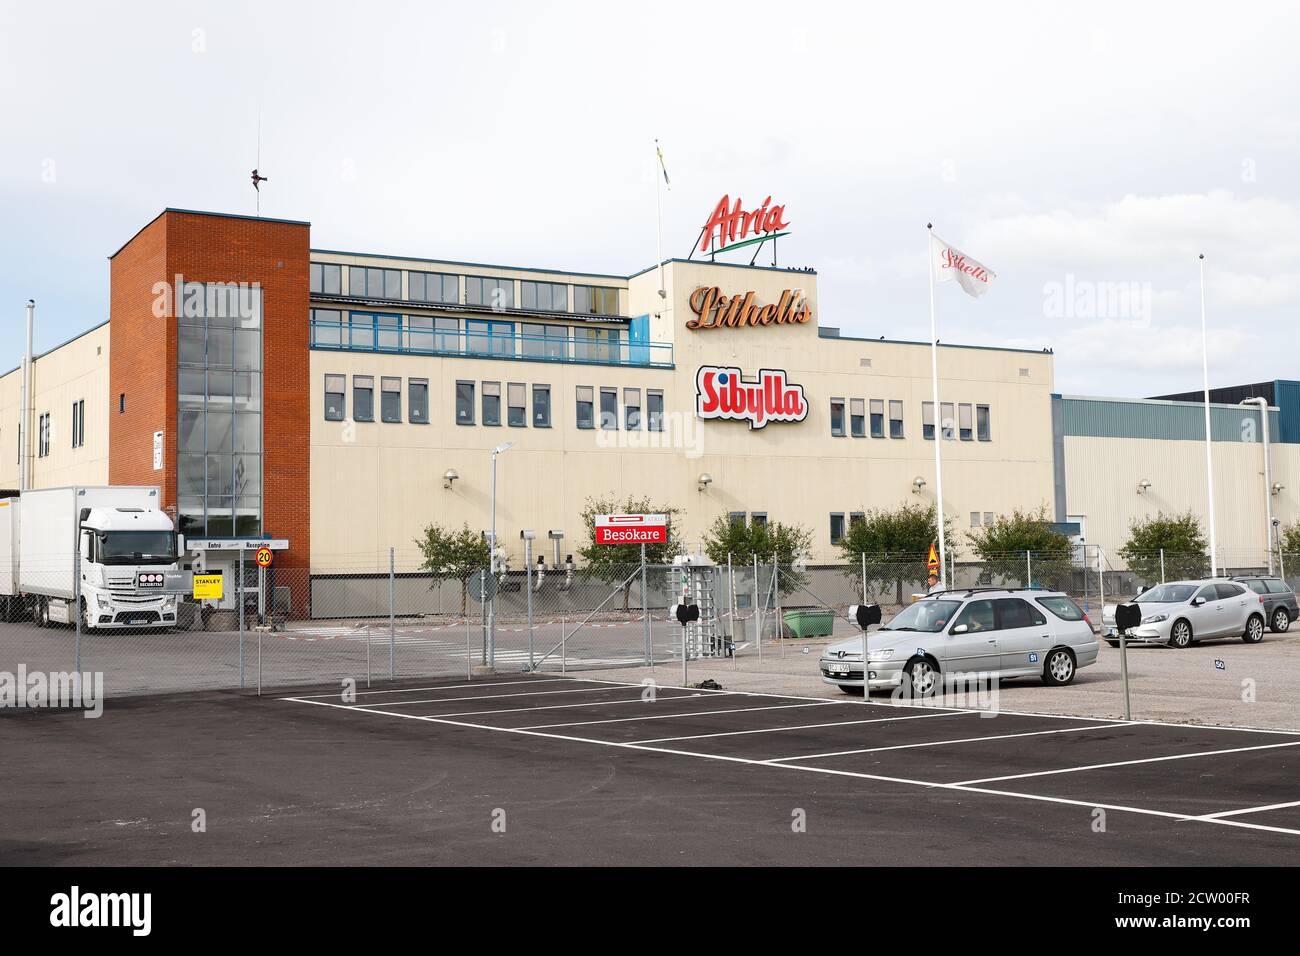 Skollersta, Svezia - 3 luglio 2020: La fabbrica di salumi di Lithells di proprietà di Atria con il marchio di fast food Sibylla. Foto Stock